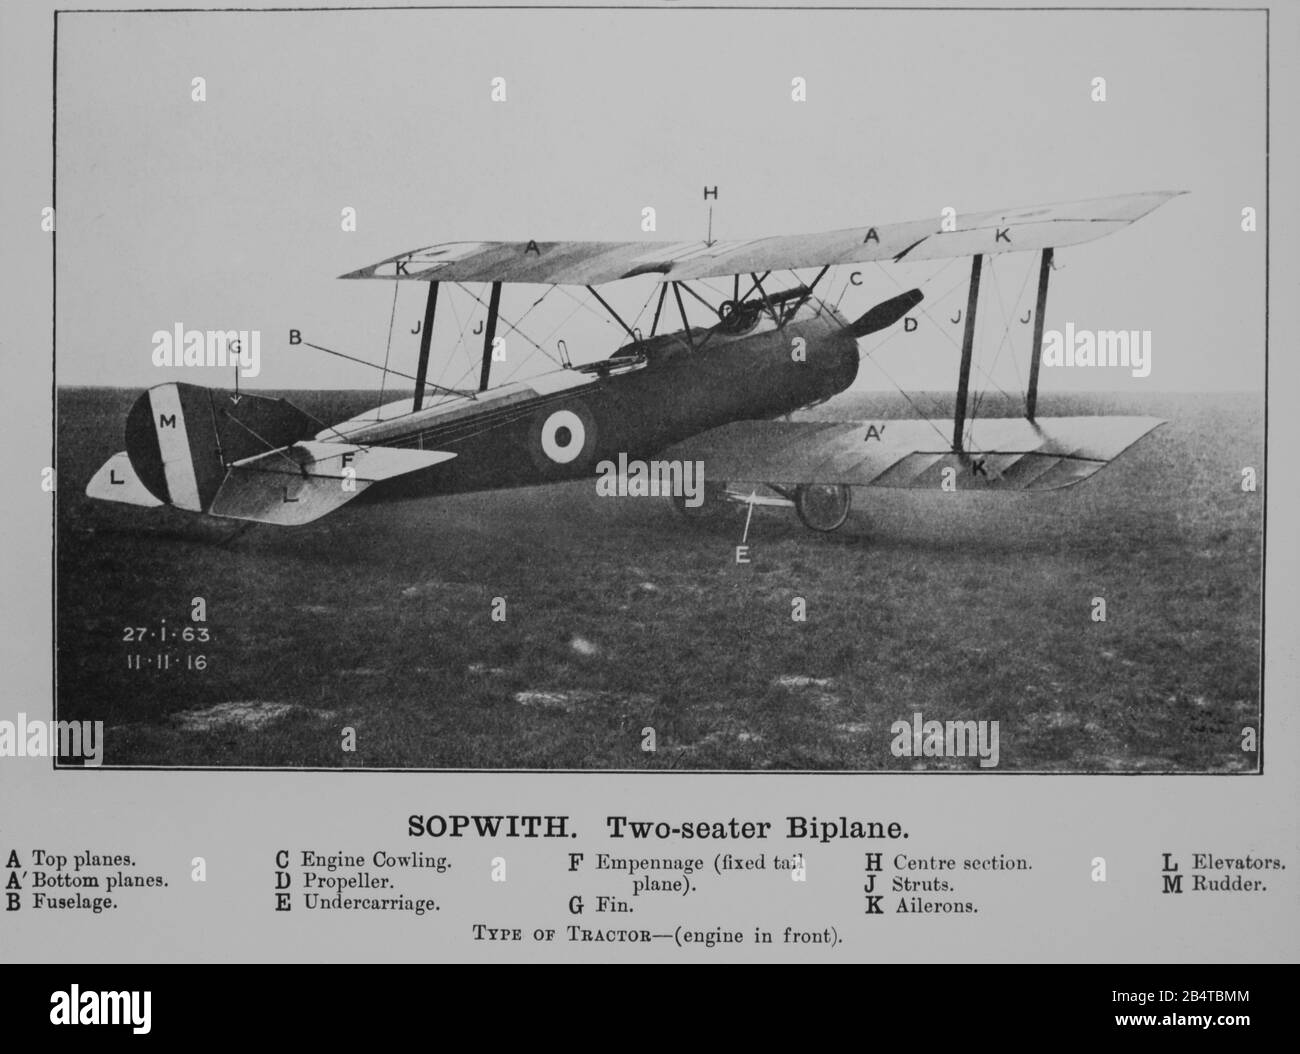 Une photo d'époque d'un Sopawith 1 1/2, ou un et demi, Strutter Biplane. Cet aéronef est entré en service au British Royal naval Air Service, RNAS, en février 1916. Photo prise le 11 novembre 1916. Banque D'Images